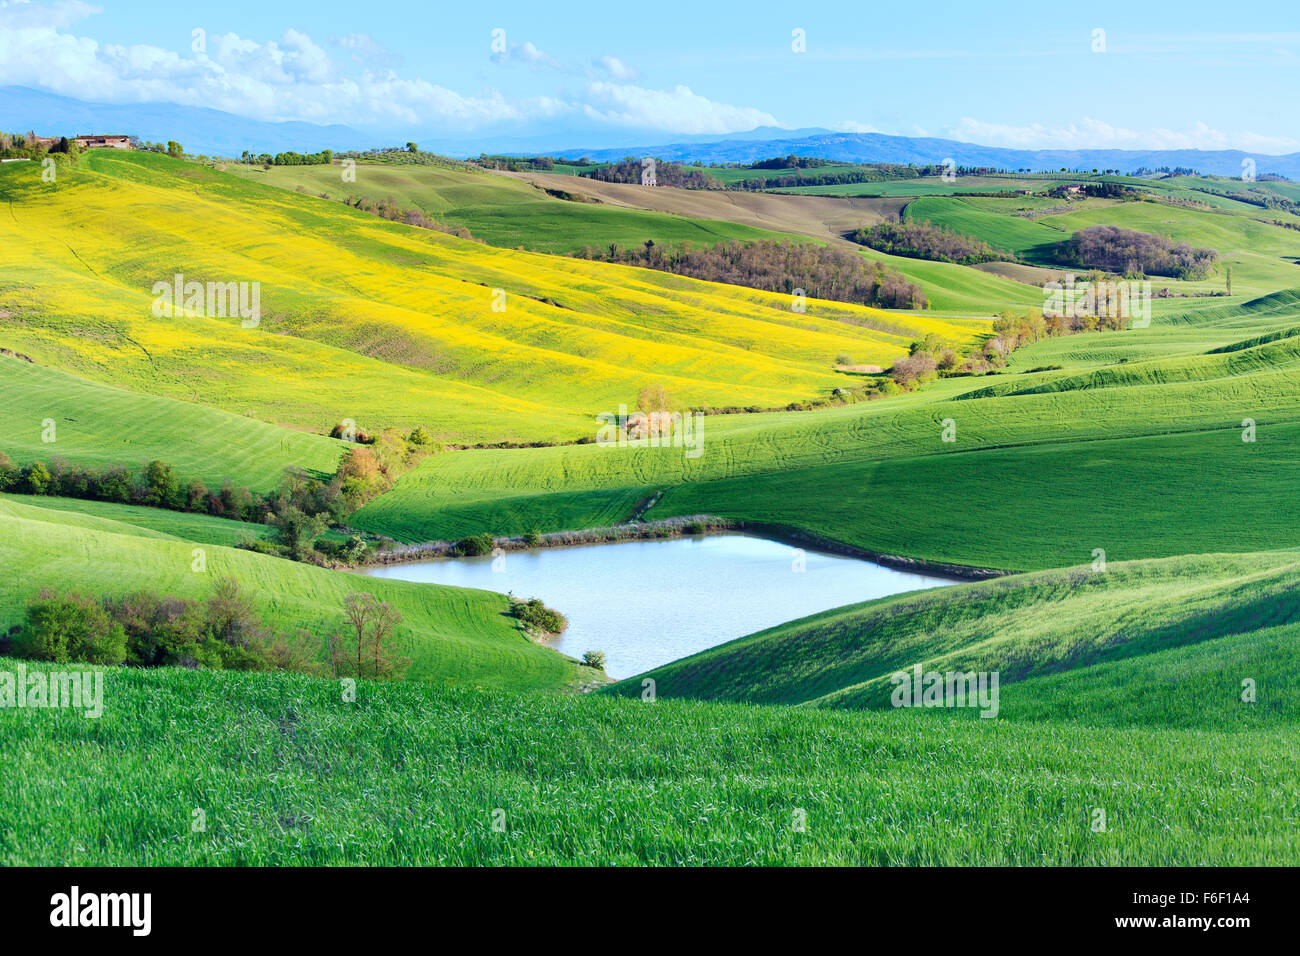 Toskana, Crete Senesi Landschaft in der Nähe von Siena, Italien, Europa. Kleiner See, grüne und gelbe Felder, blauer Himmel mit Wolken. Stockfoto